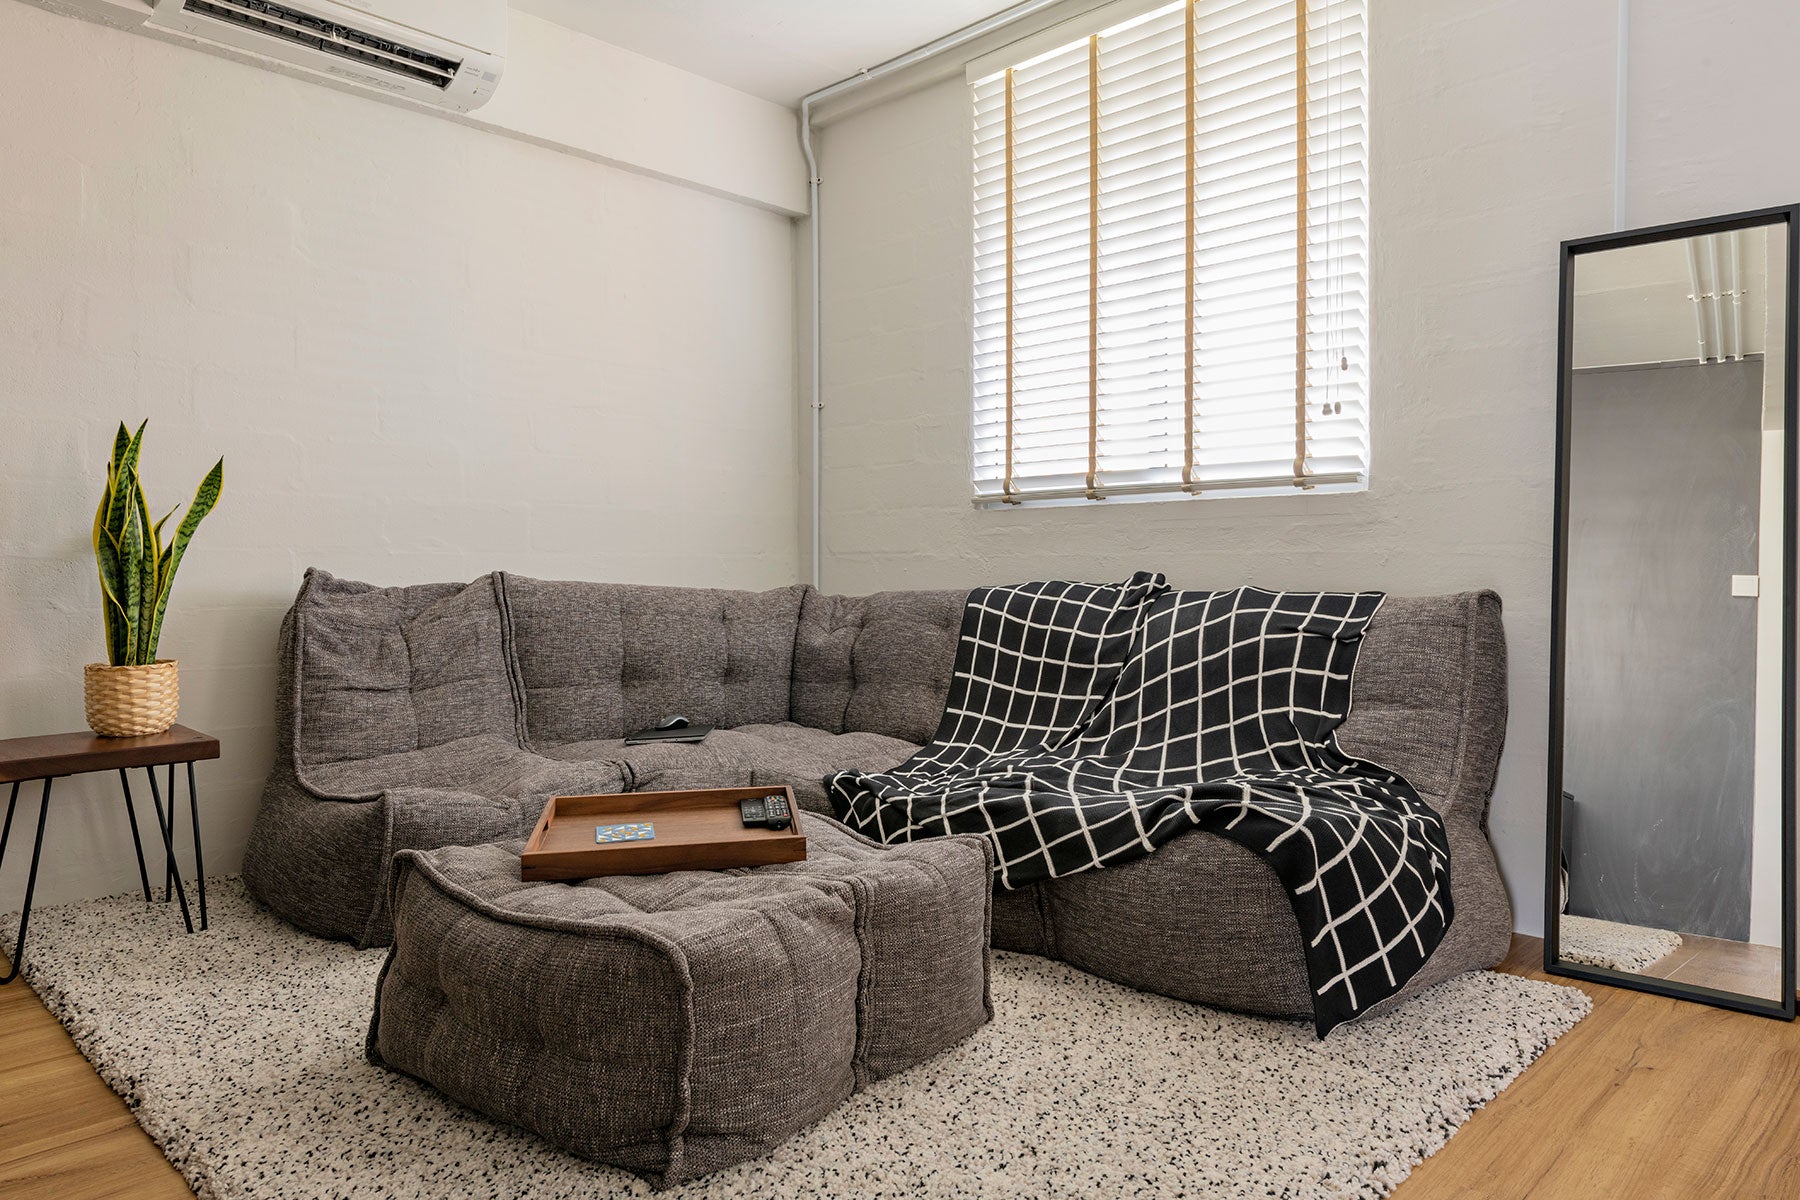 MODULAR bean bag sofa in HDB apartment 01